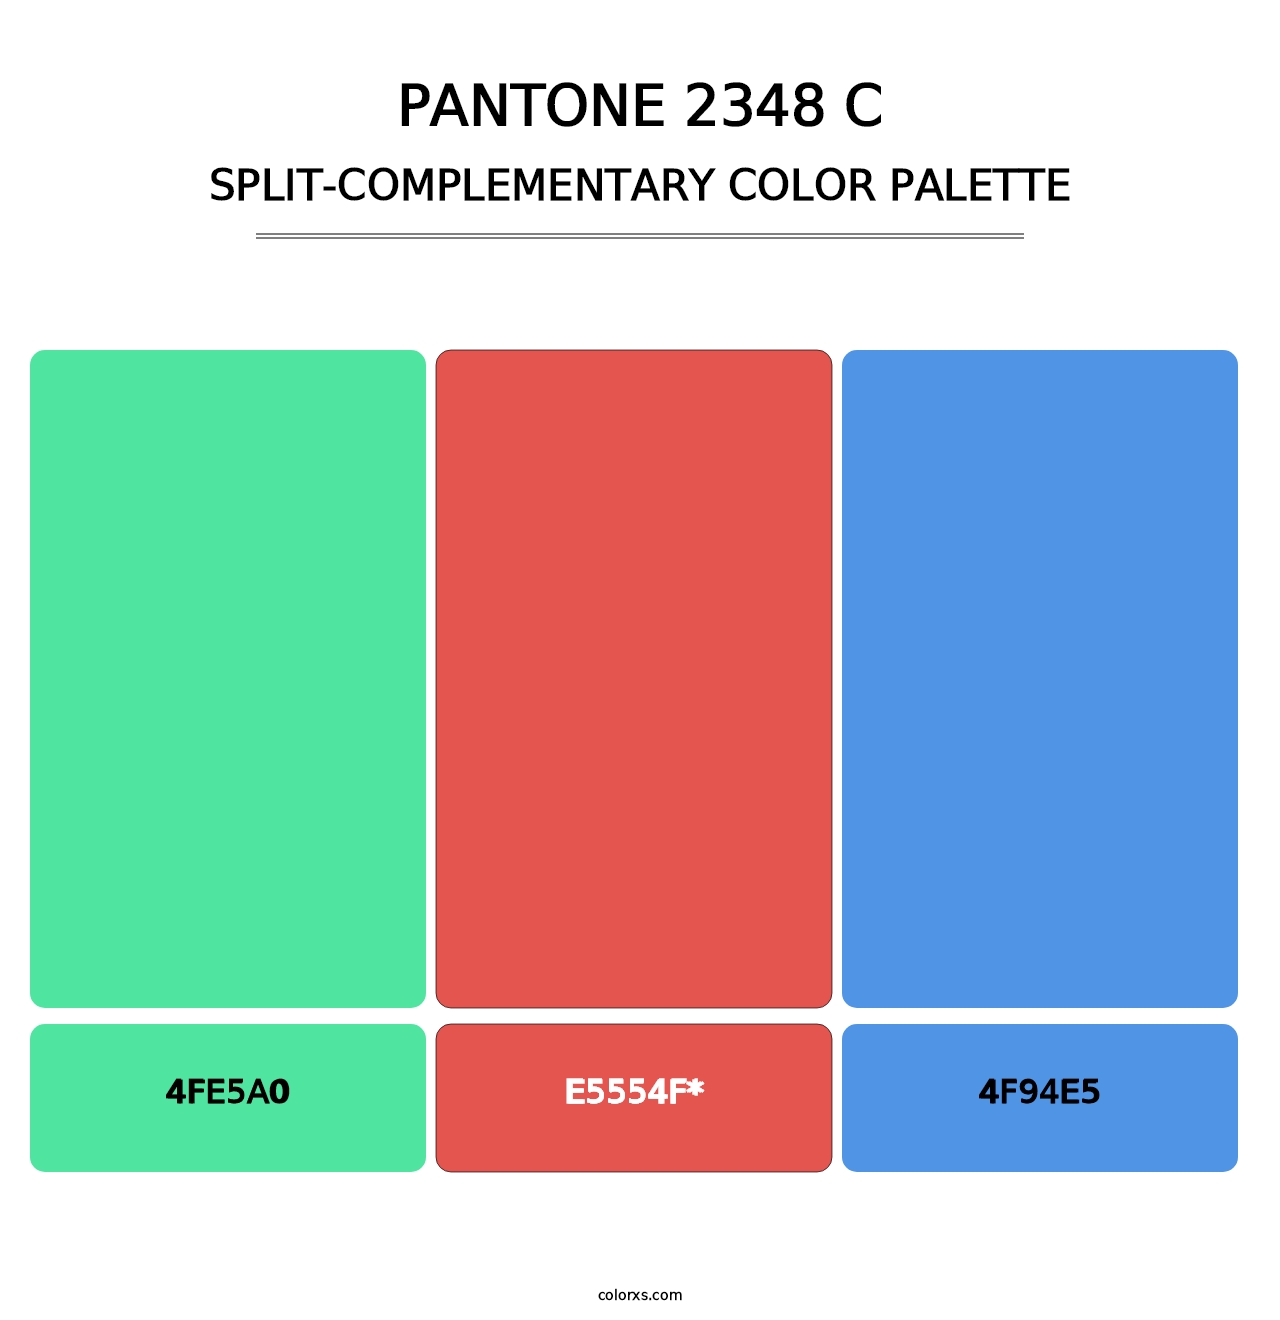 PANTONE 2348 C - Split-Complementary Color Palette